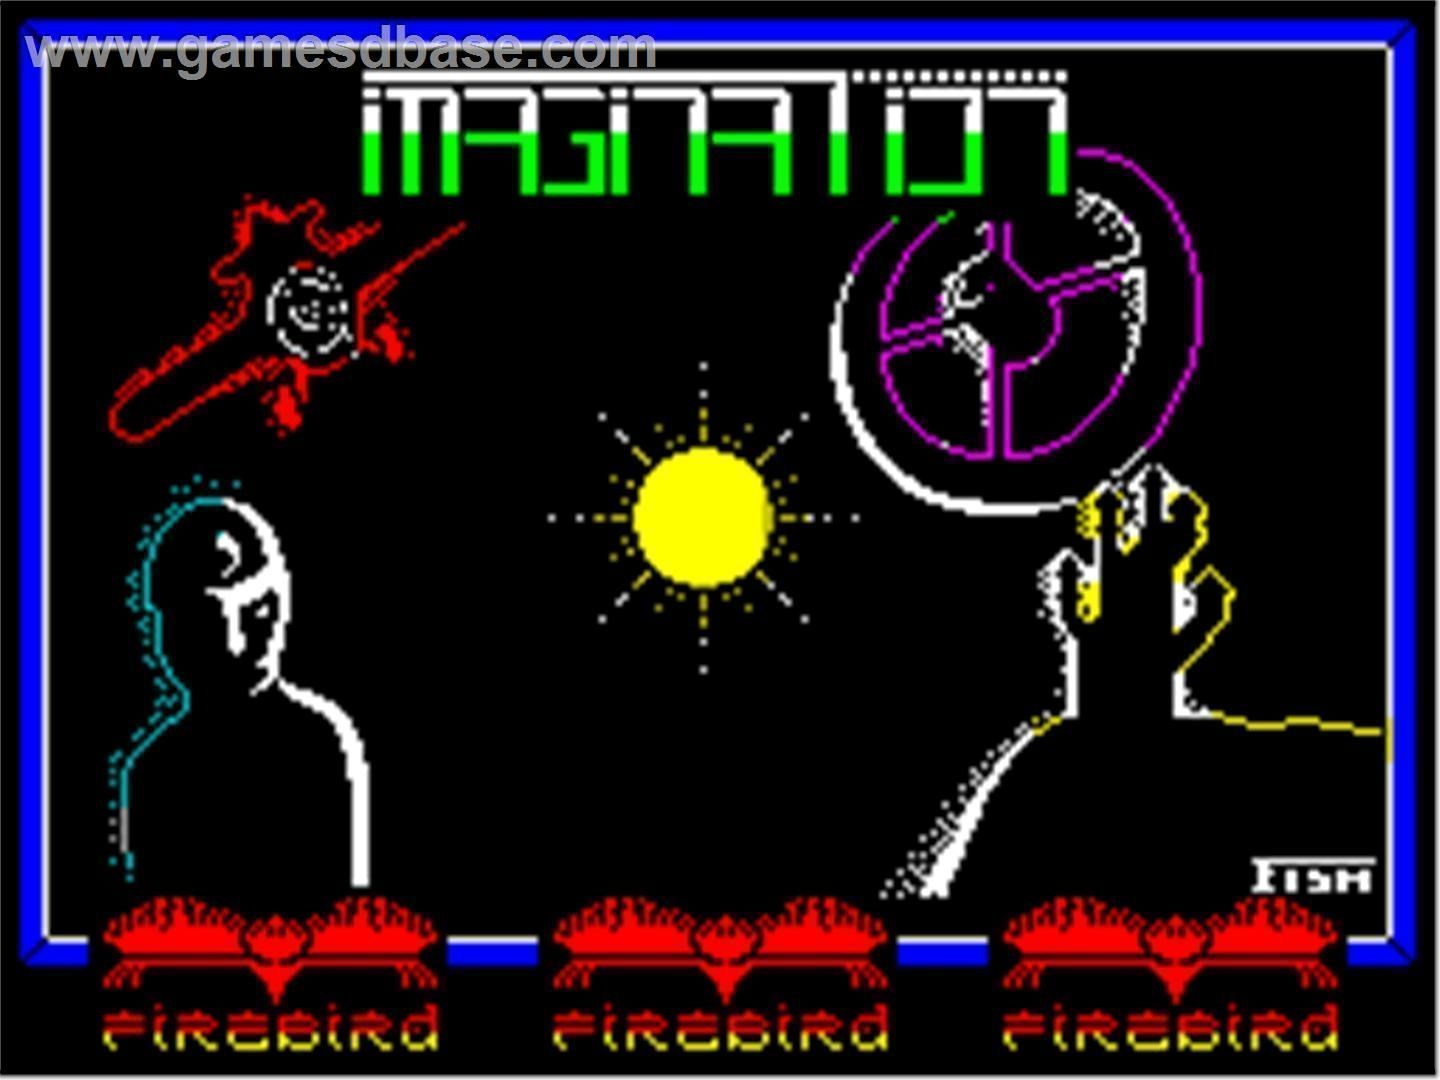 Imagination (1987)(Firebird Software)[a]